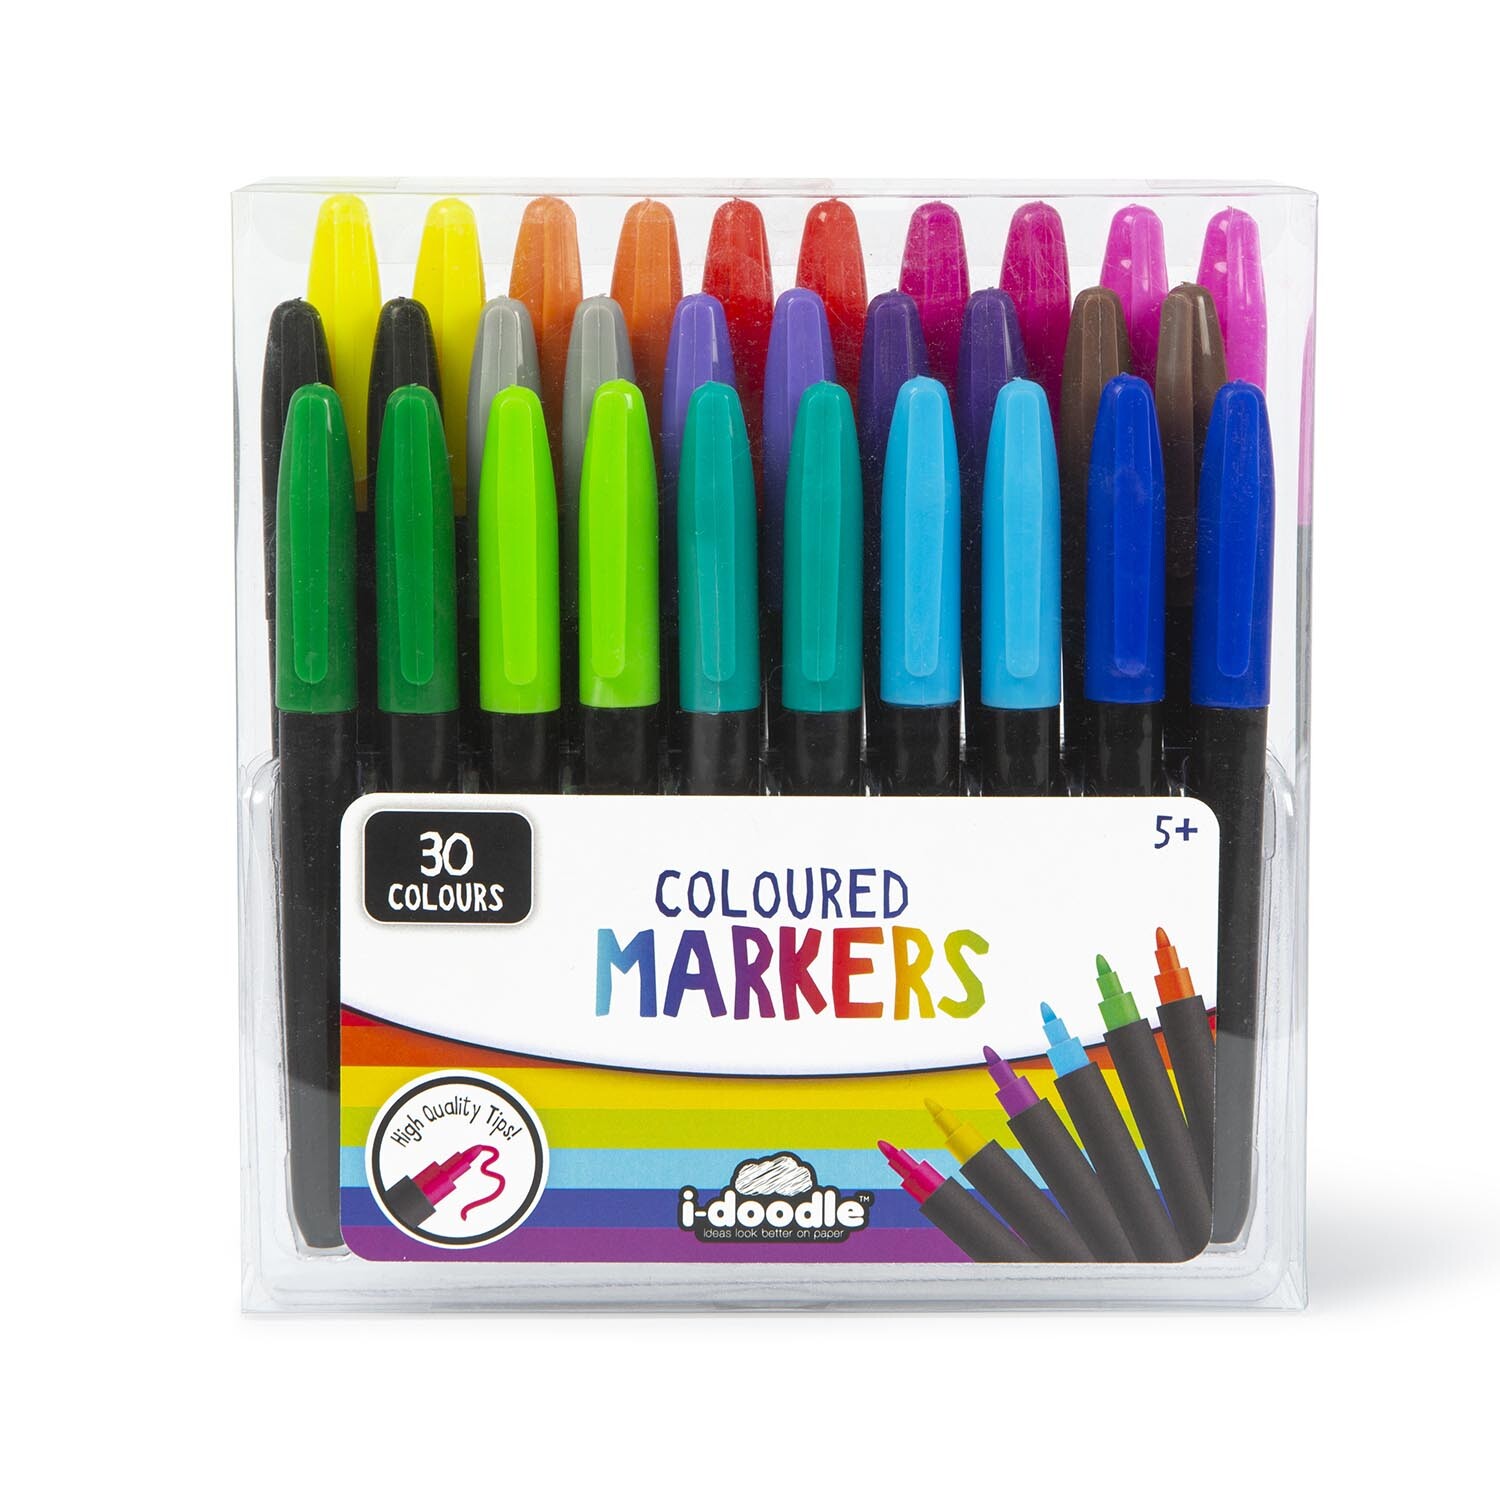 i-doodle Coloured Marker 30 Pack Image 1